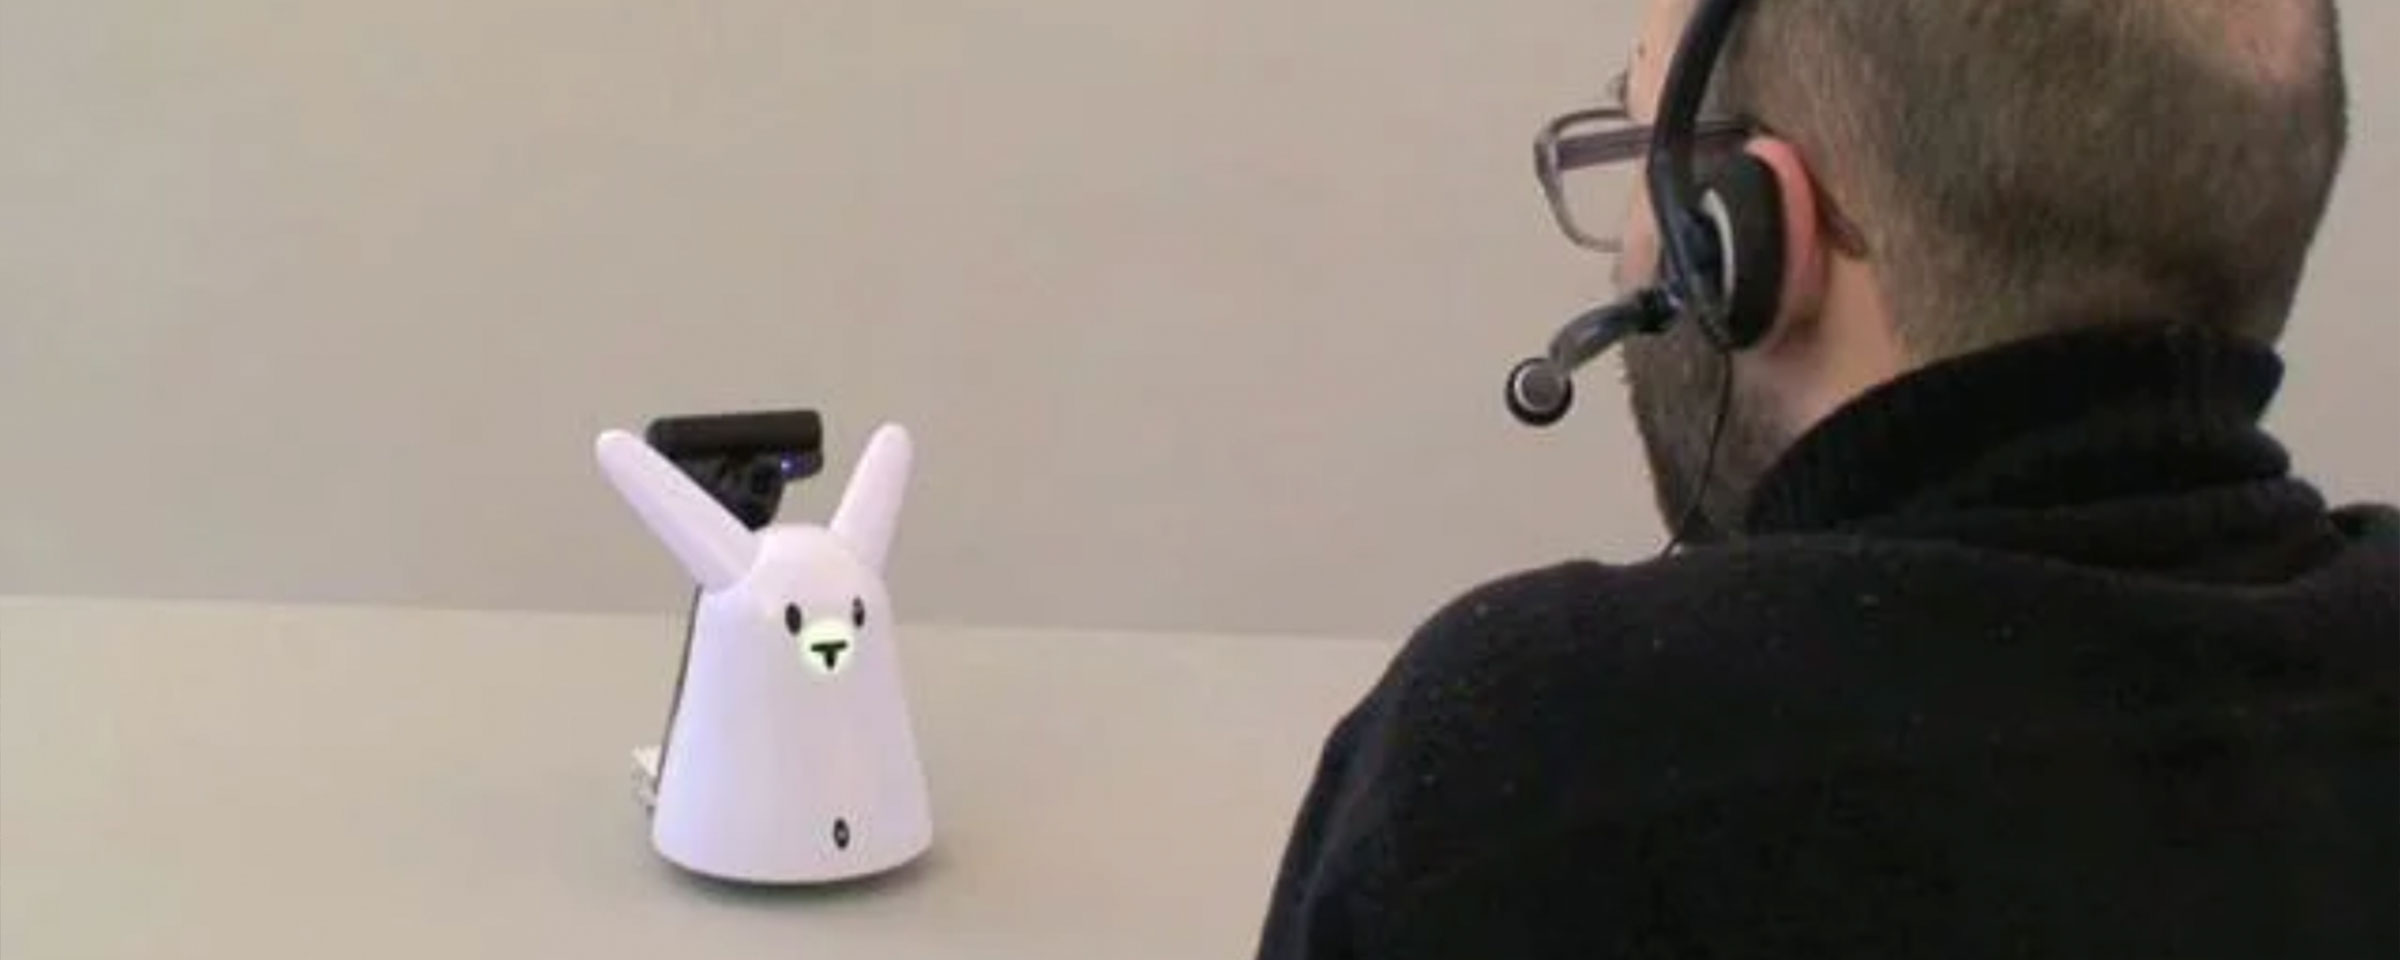 Benedikt Groß spricht per Headset mit einem Roboter, der die Form eines Kaninchens hat